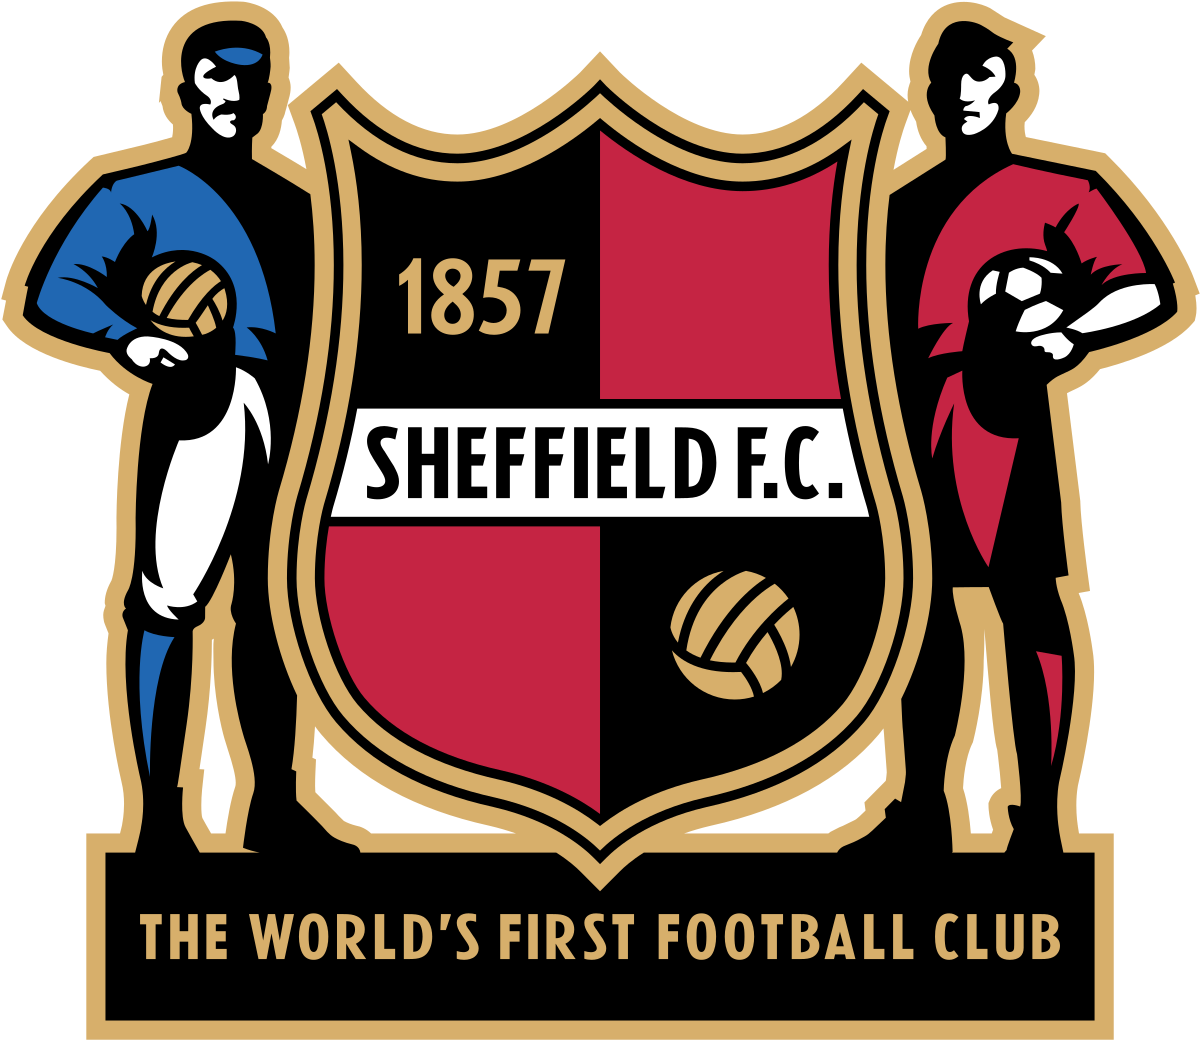 Sheffield F.C. - Wikipedia